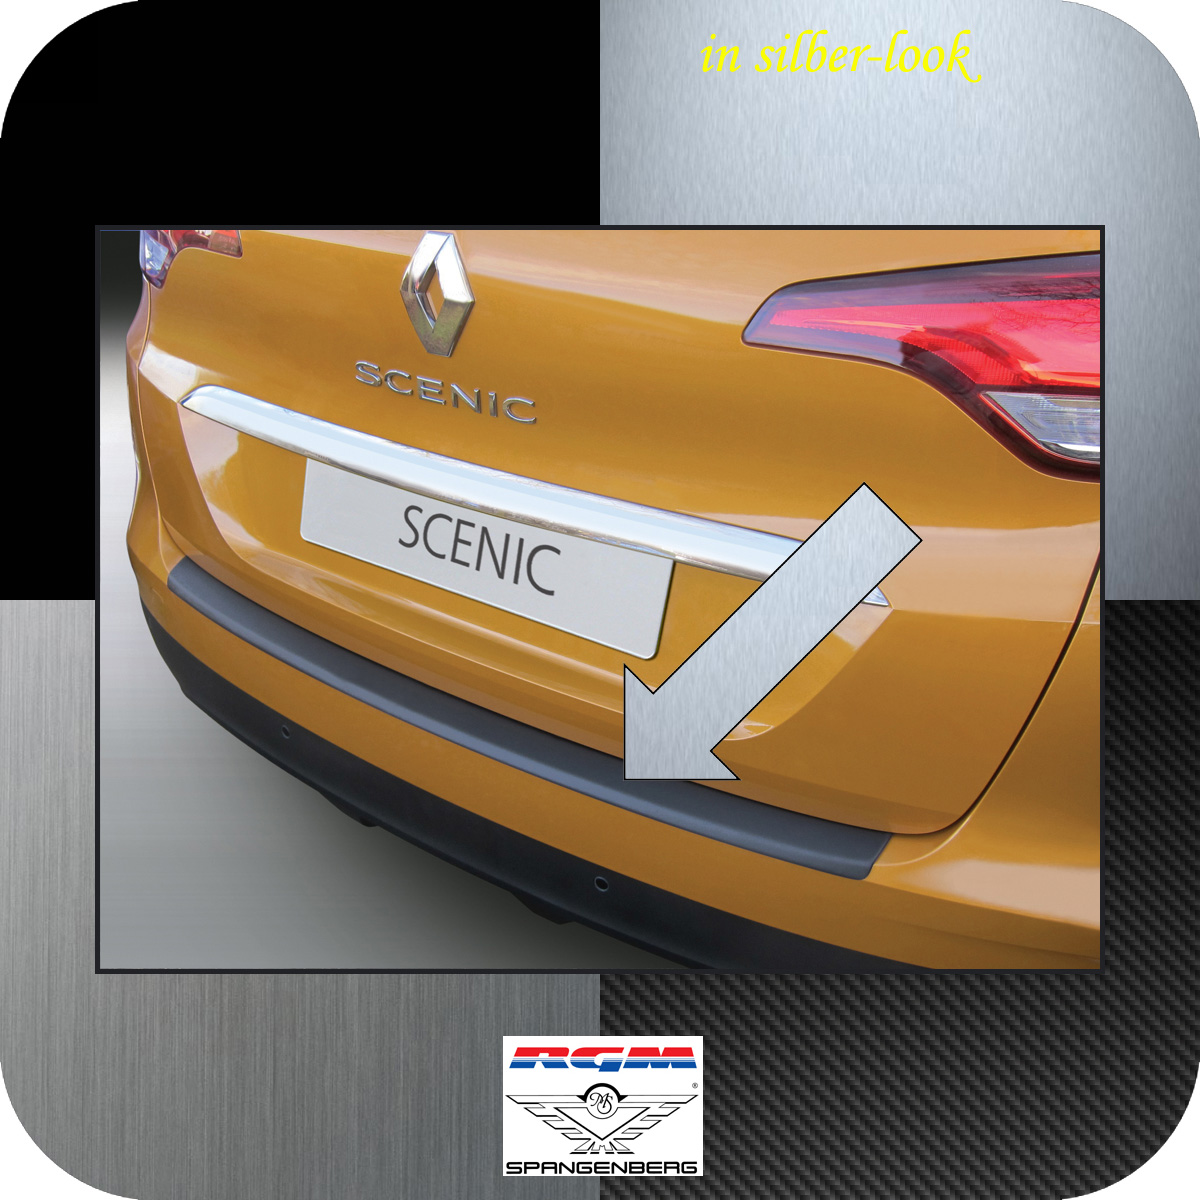 Ladekantenschutz Silber-Look Renault Scenic IV Kombi 4. Gen ab 2016- 3506809